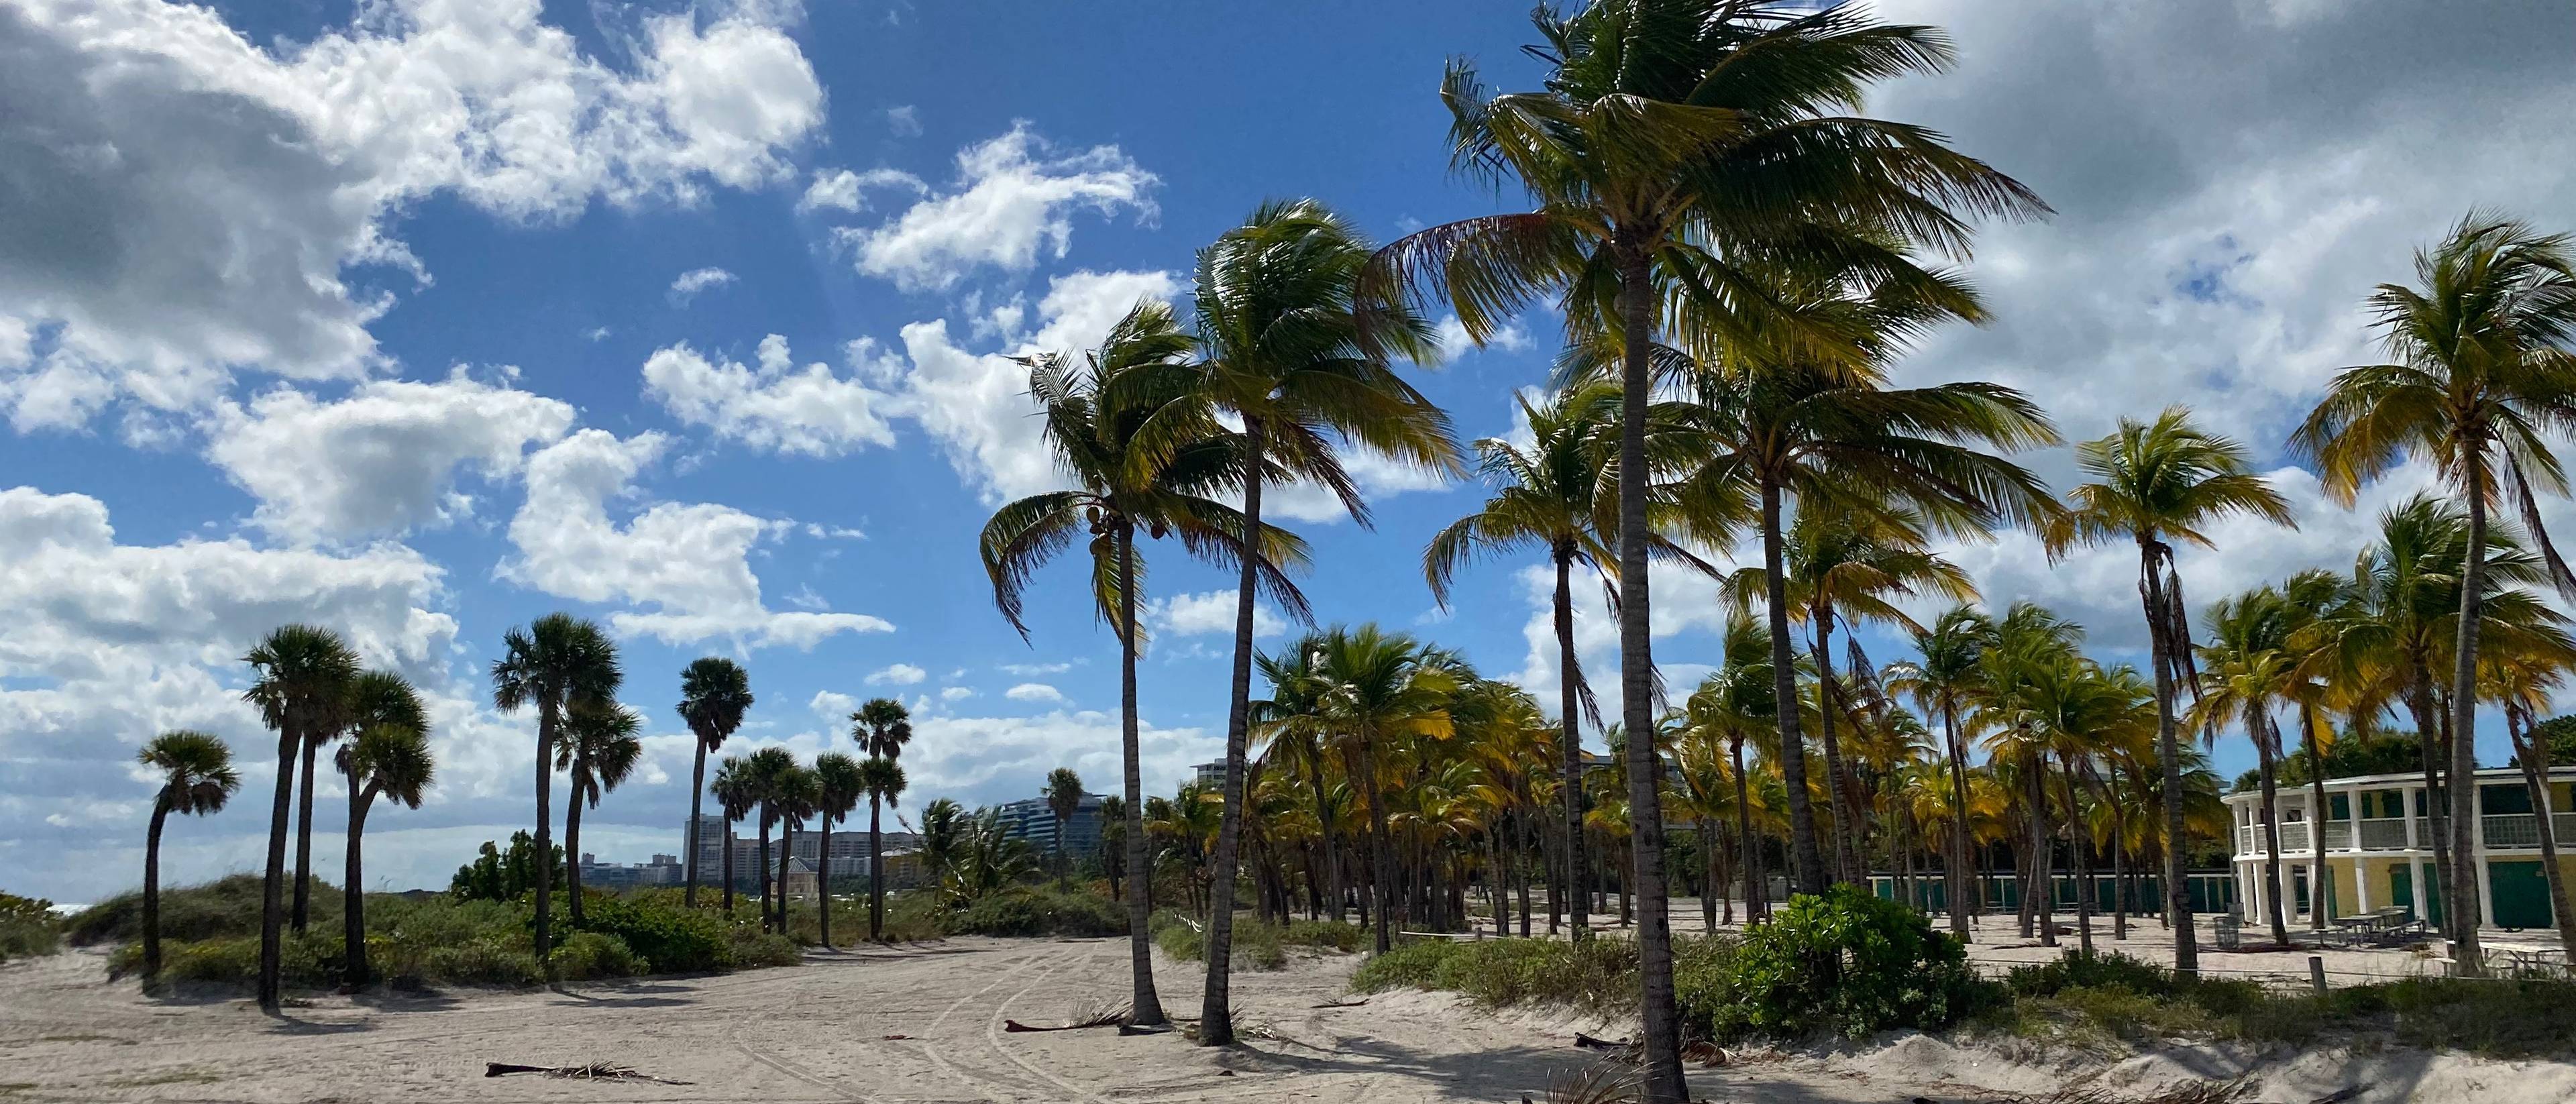 Bonjour Miami ! Vivez une première journée paradisiaque.